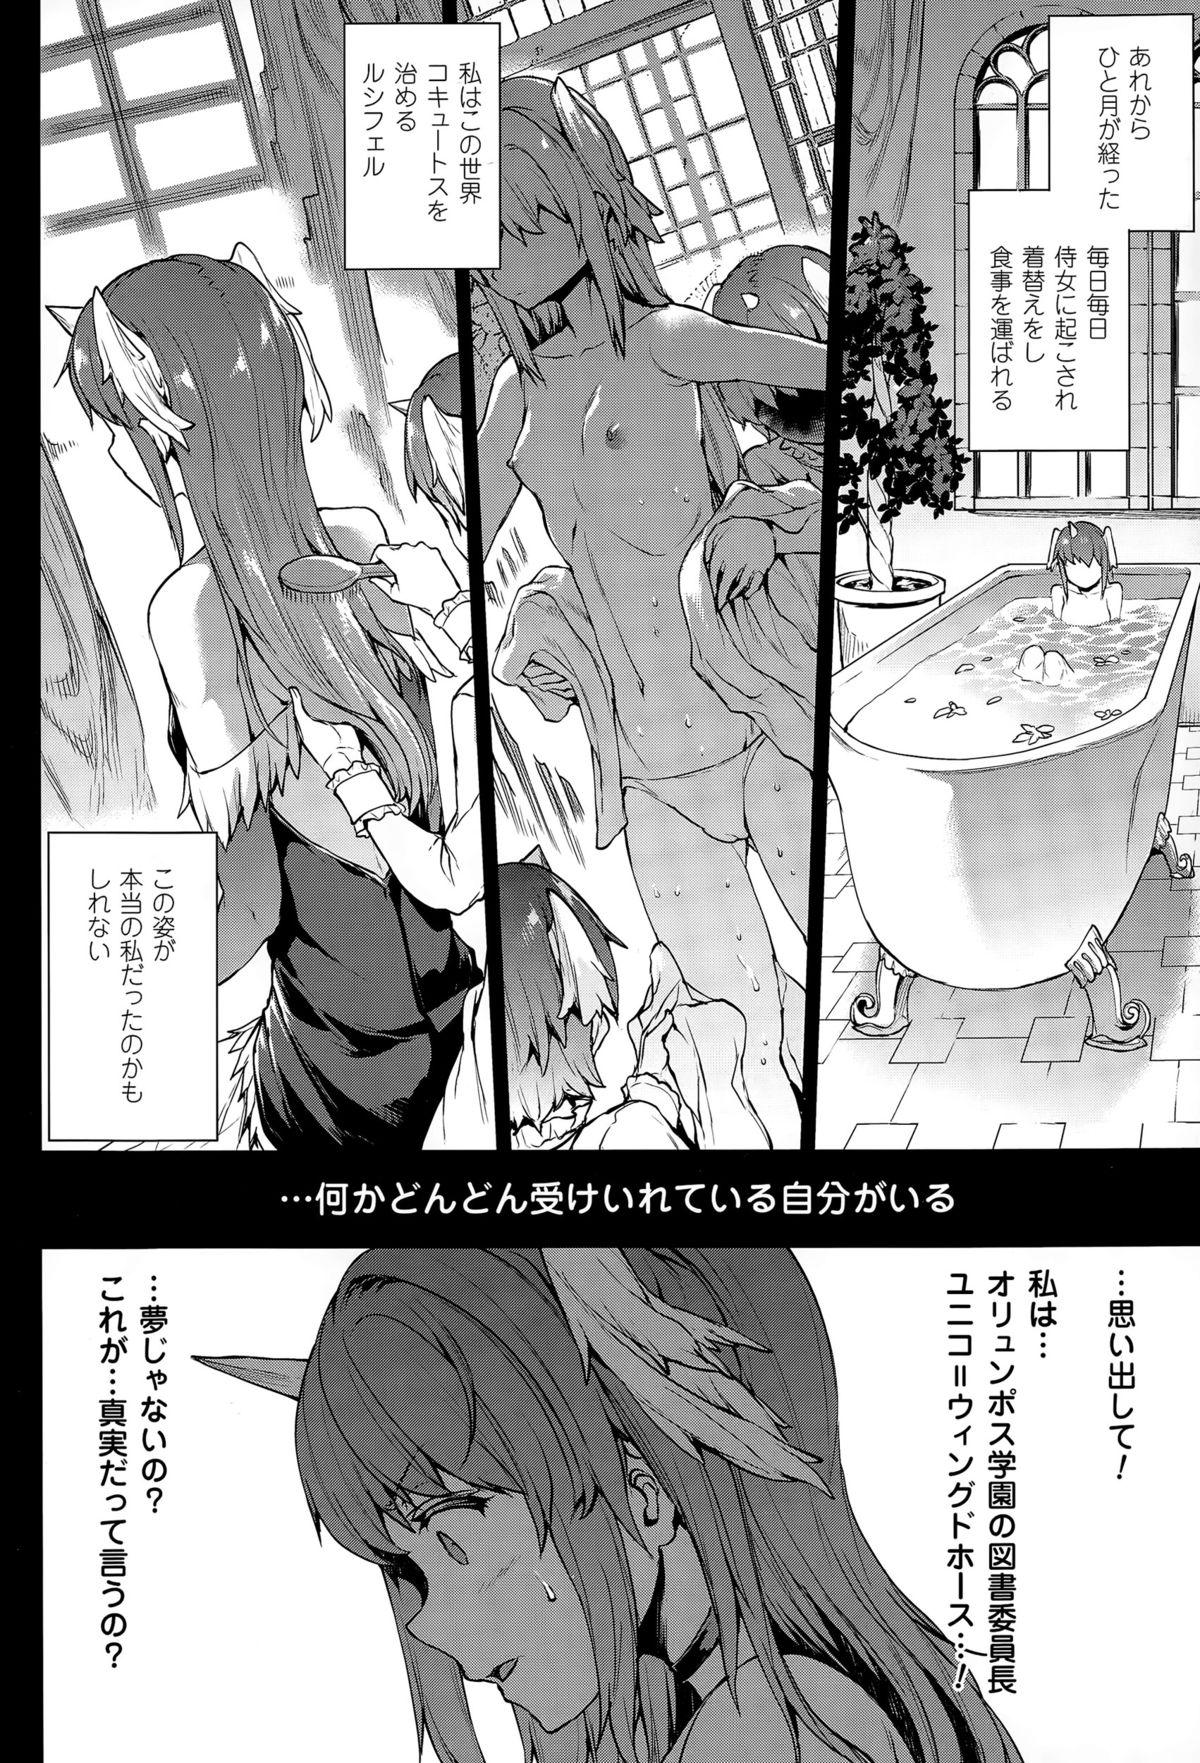 [Erect Sawaru] Shinkyoku no Grimoire -PANDRA saga 2nd story- CH 13-20 84